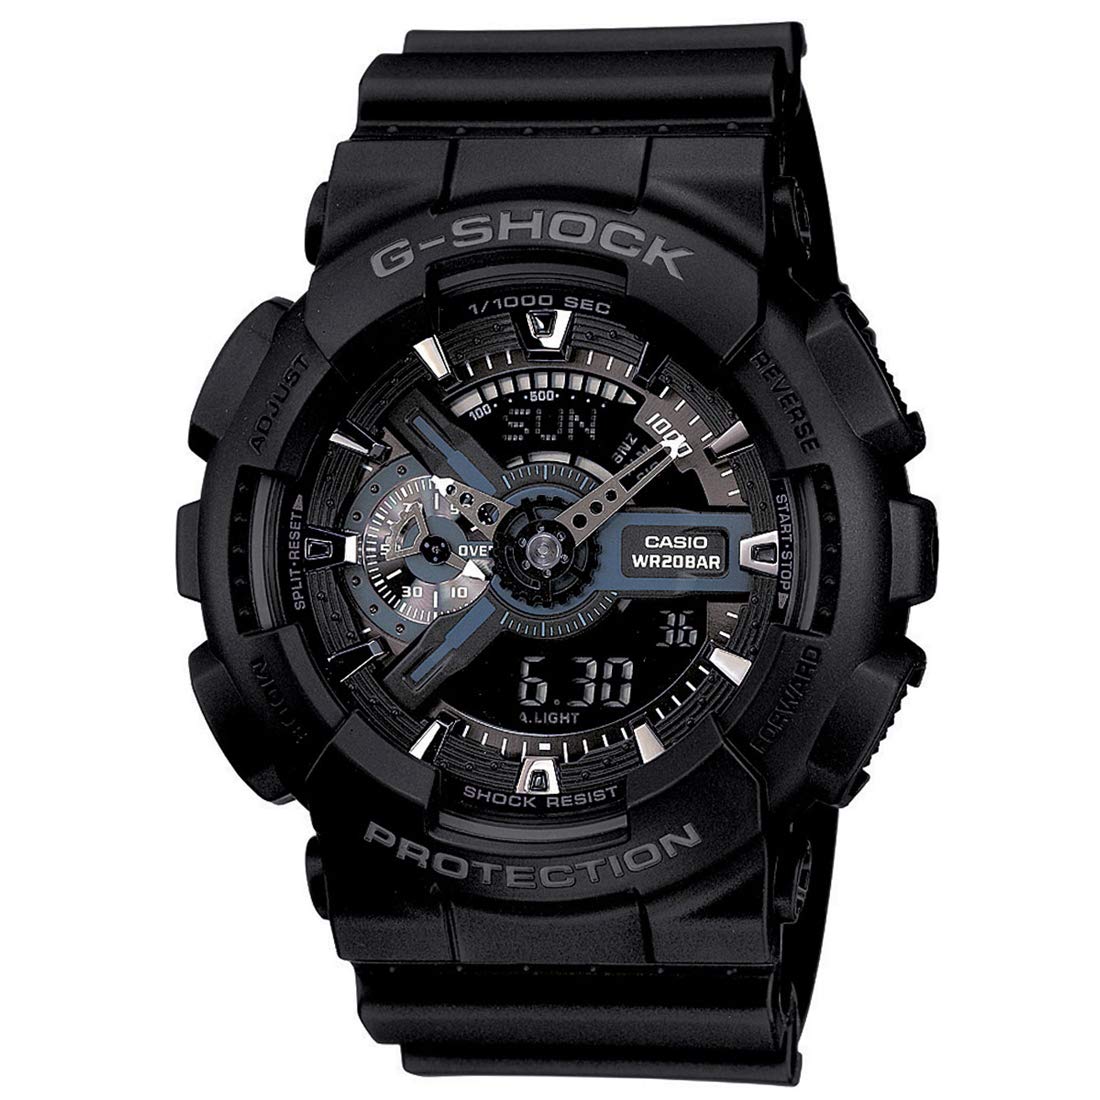 Casio G-Shock GA-110-1BDR (G317) Watch for Men